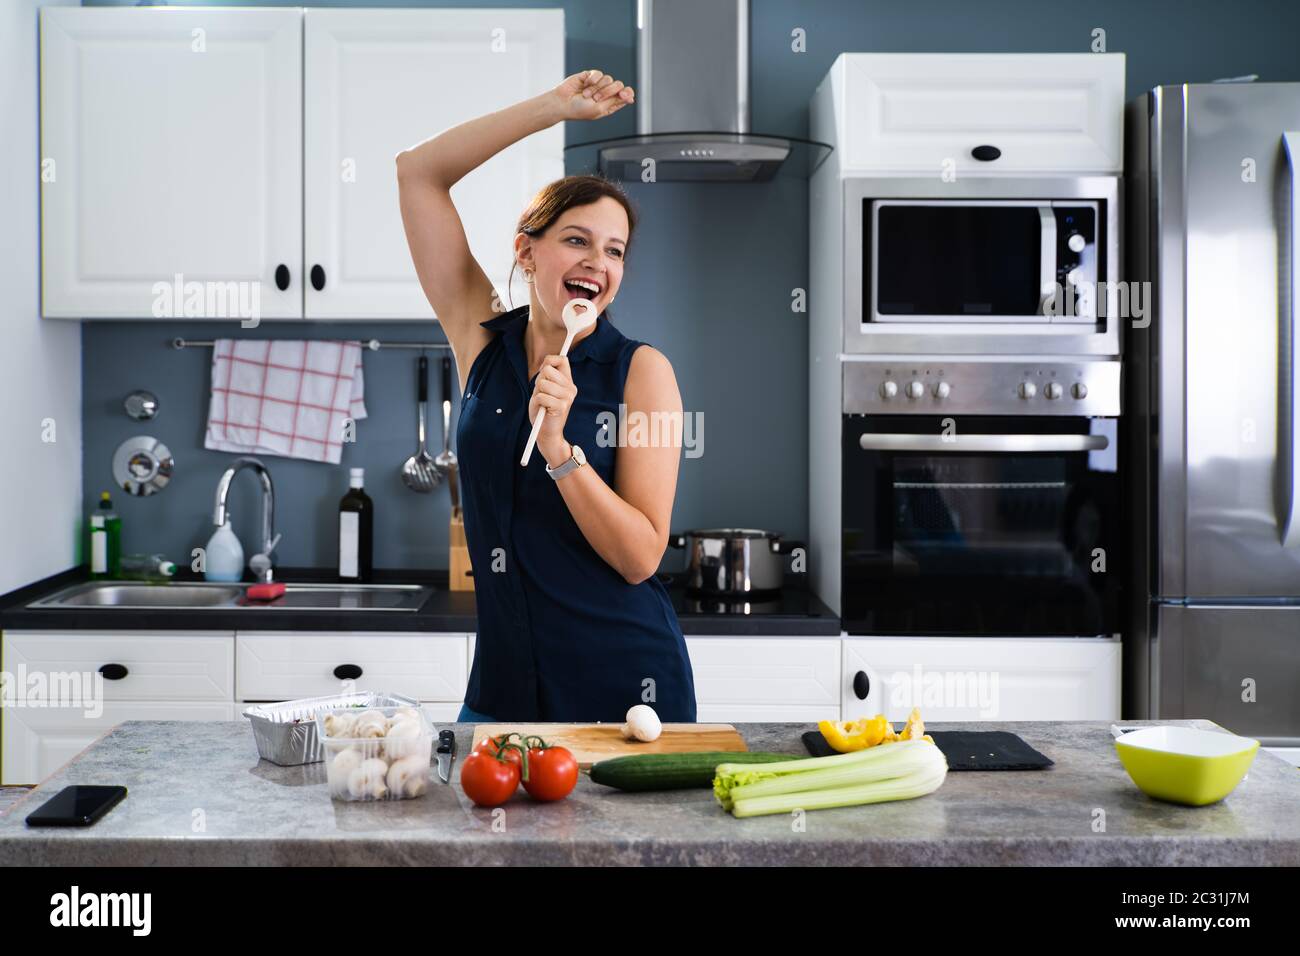 women in kitchen memes